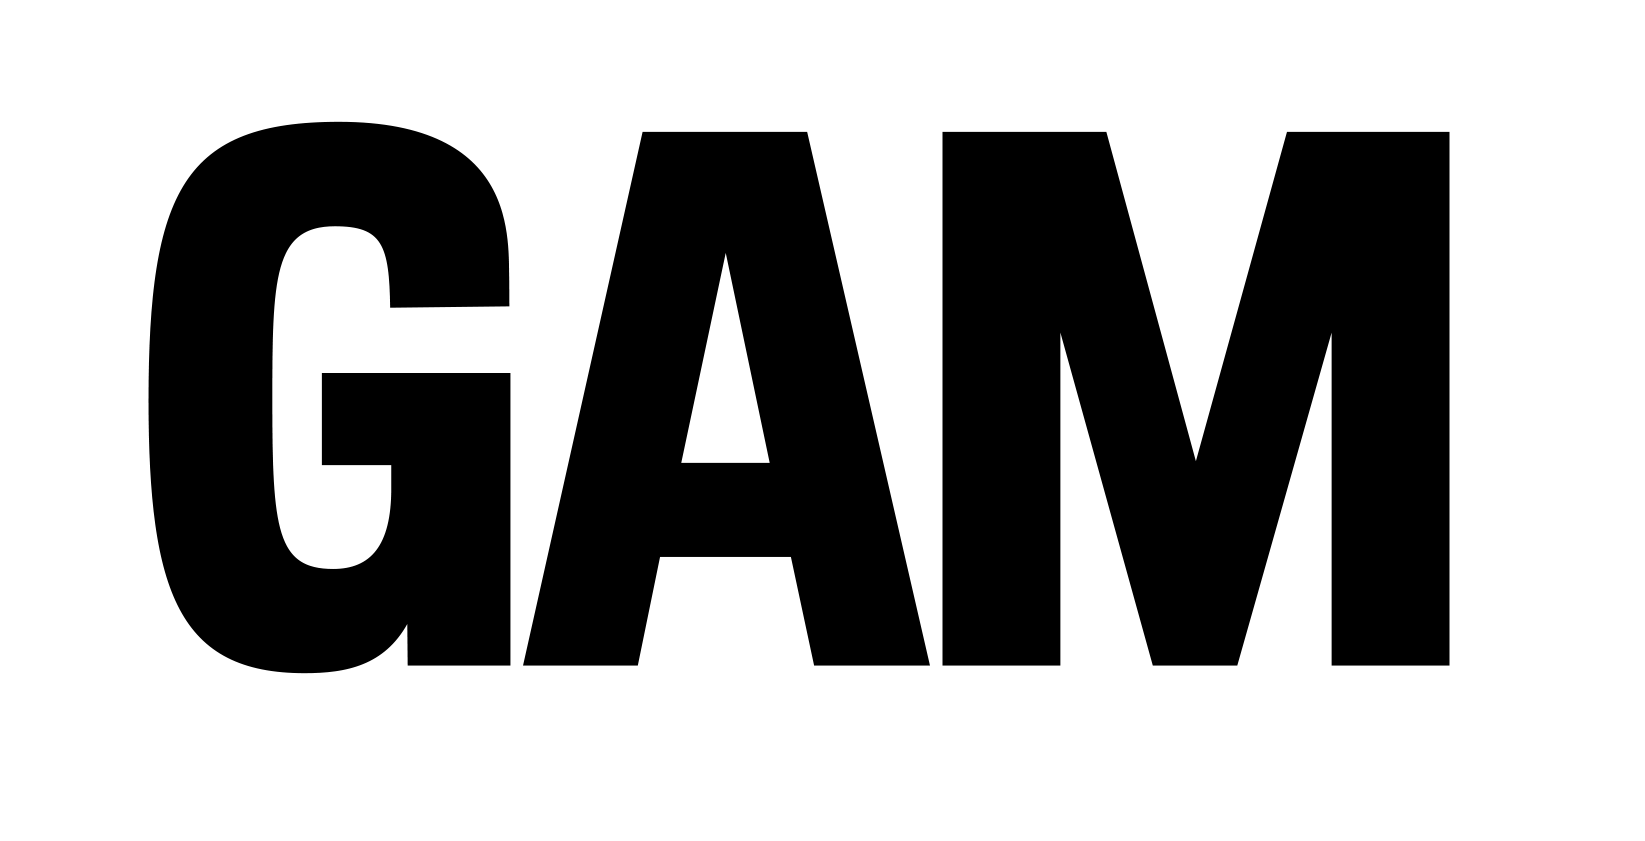 Logo GAM